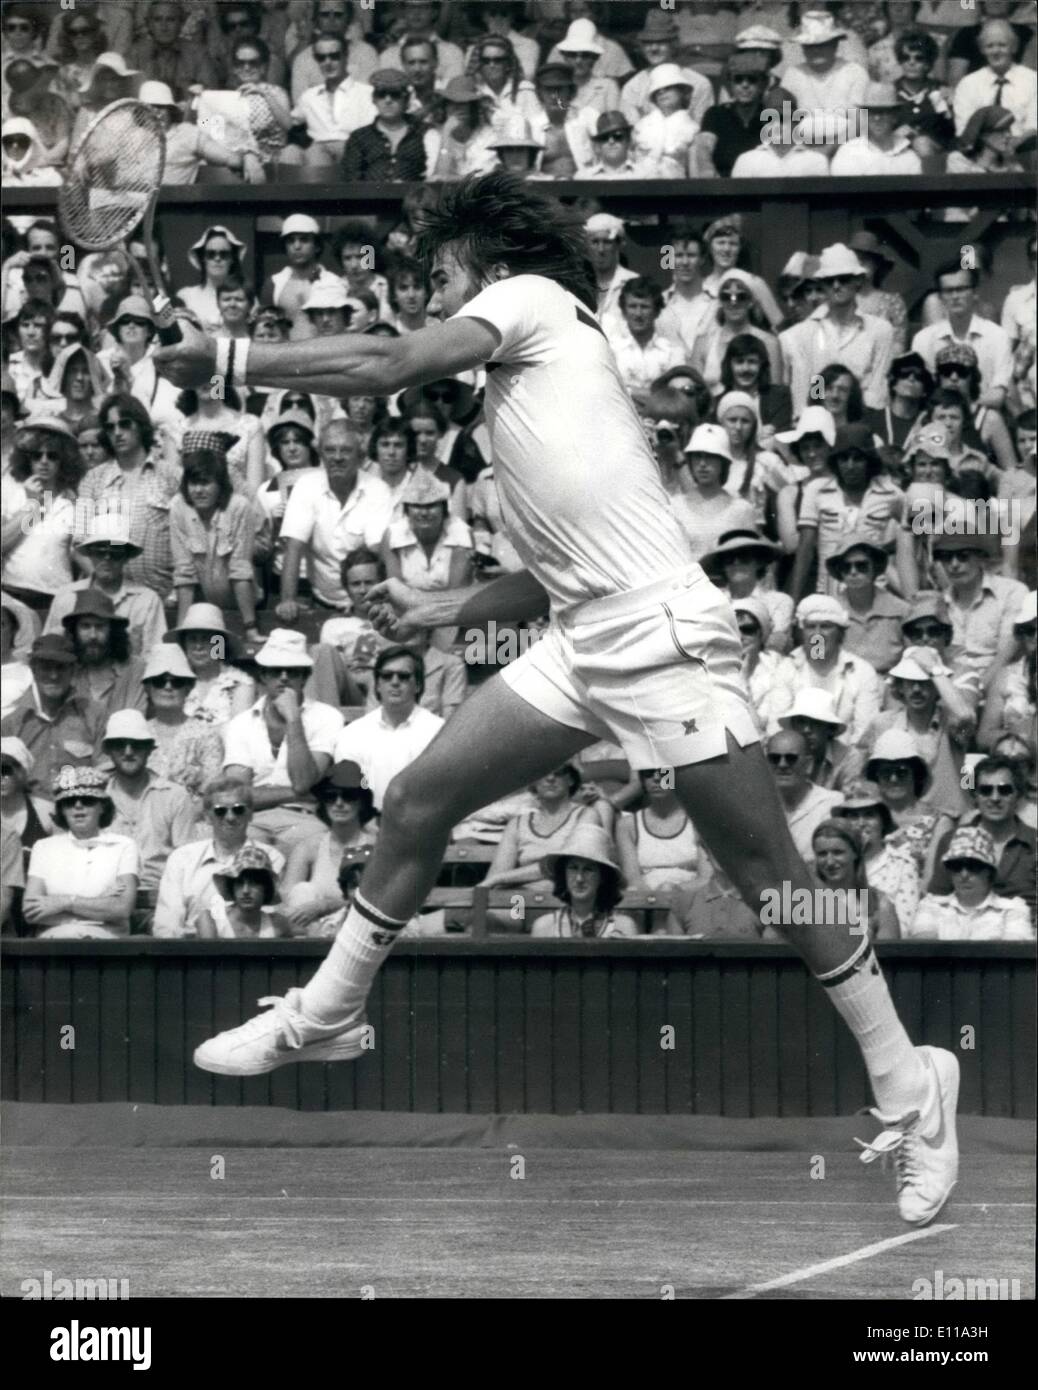 Giugno 06, 1976 - tennis a Wimbledon. Jimmy Connors batte Stan Smith. La foto mostra una azione girato di Jimmy Connors (U.S.A) durante la sua partita contro Stan Smith (USA), il quale ha battuto, a Wimbledon oggi. Foto Stock